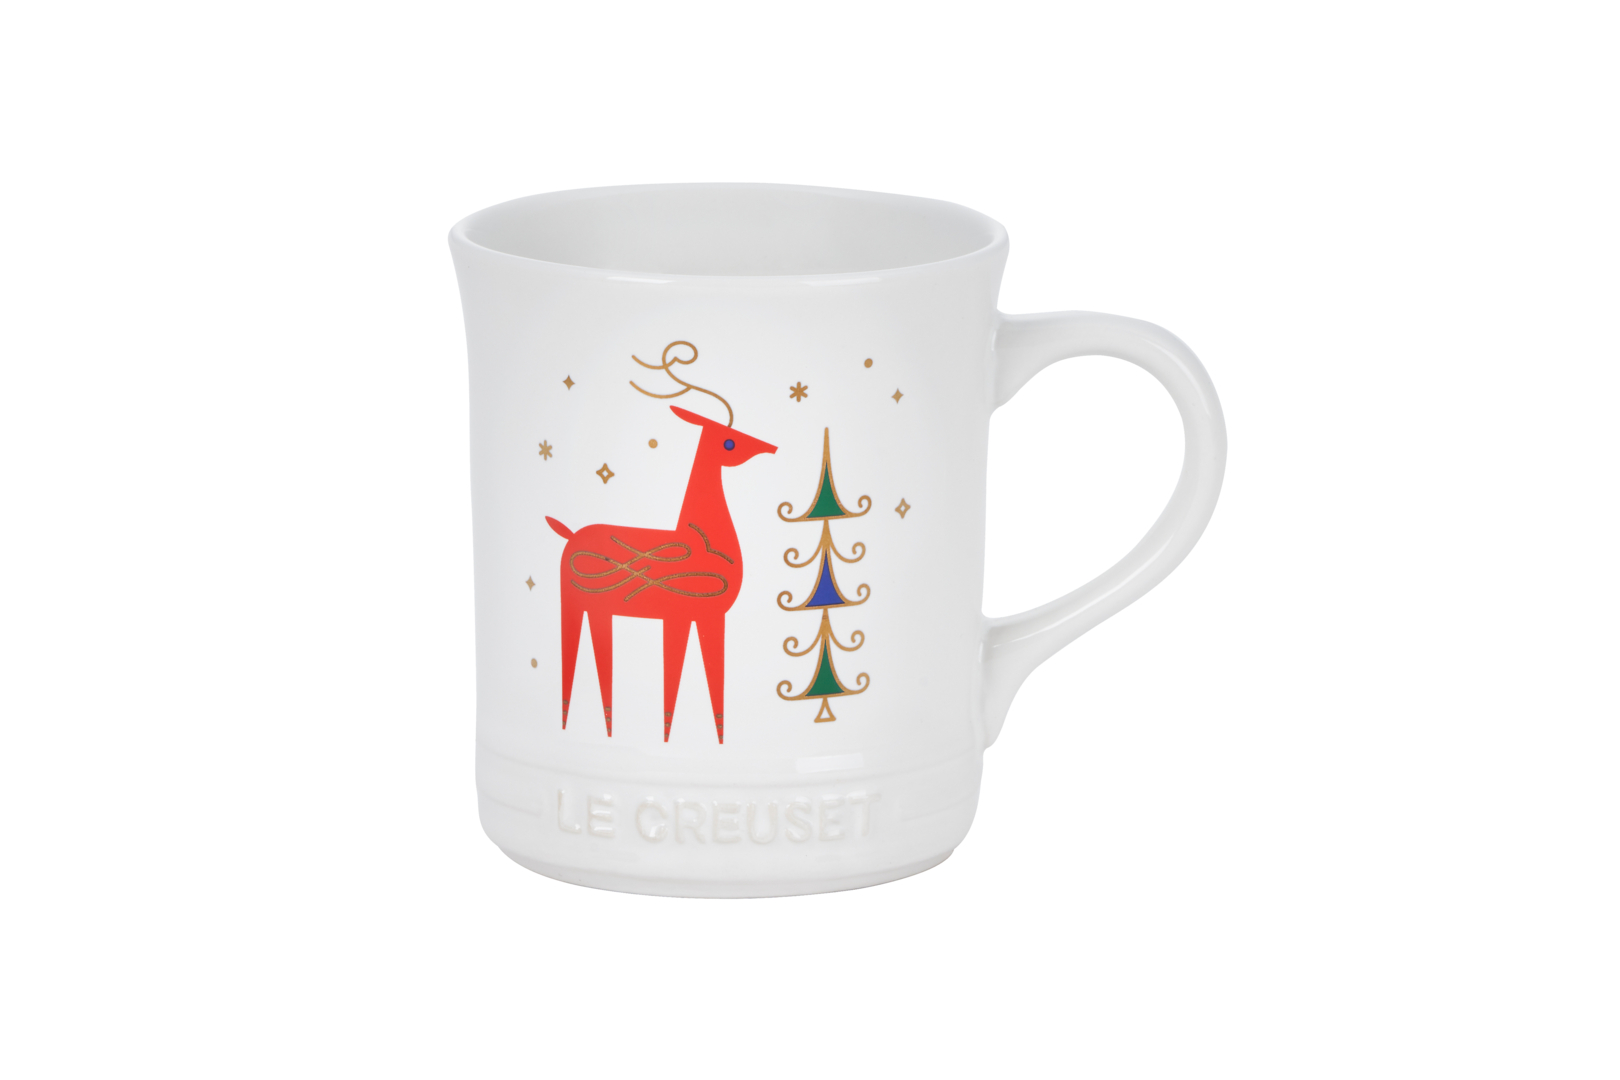 LE CREUSET的歡樂耶誕馬克杯上麋鹿可愛討喜。（LE CREUSET提供）